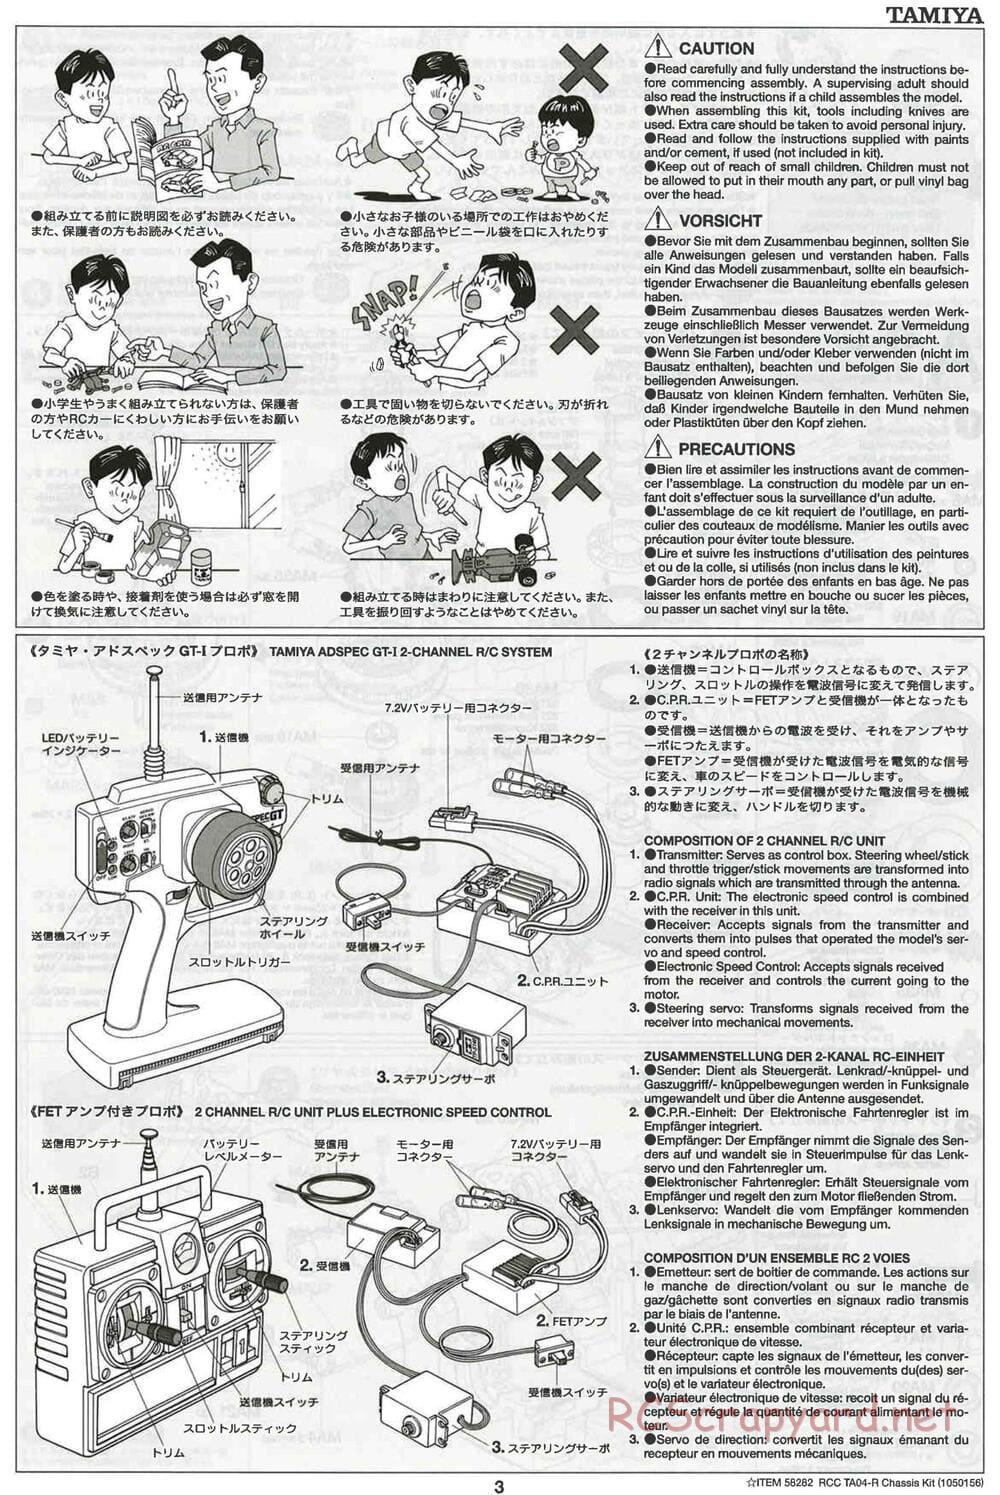 Tamiya - TA-04R Chassis - Manual - Page 3